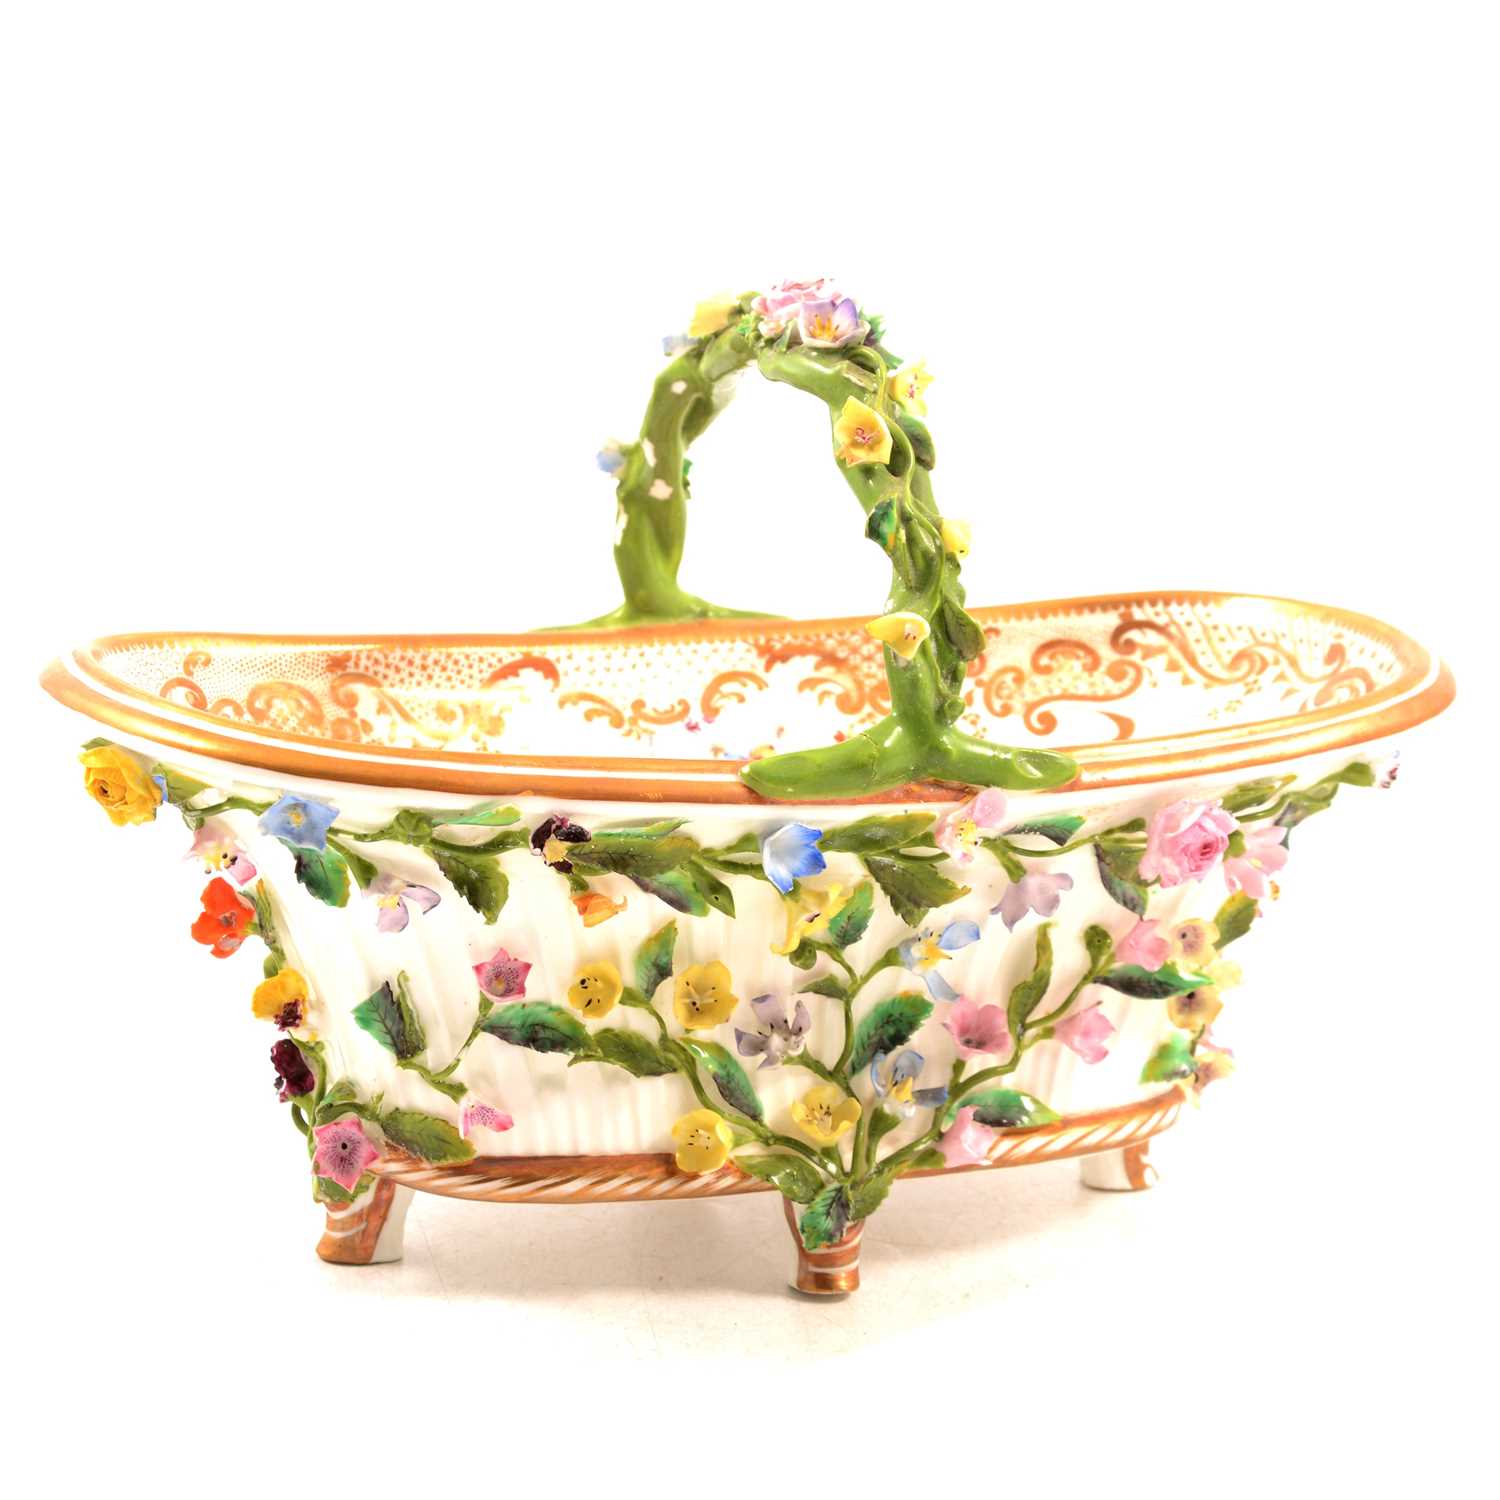 Dresden porcelain floral-encrusted basket